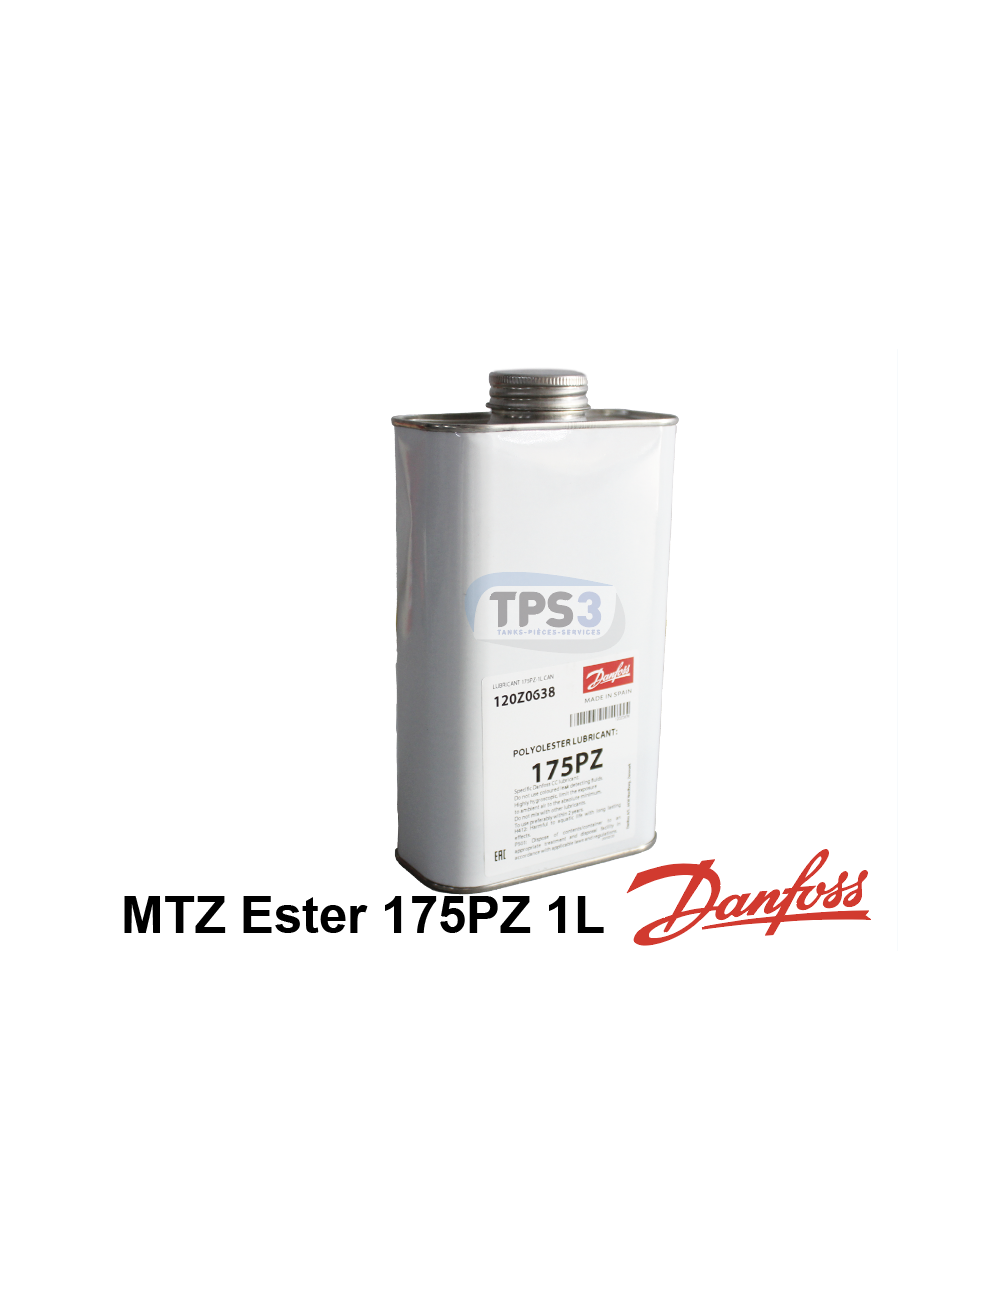 Huile frigorifique Danfoss MTZ type Ester 175PZ bidon de 1L